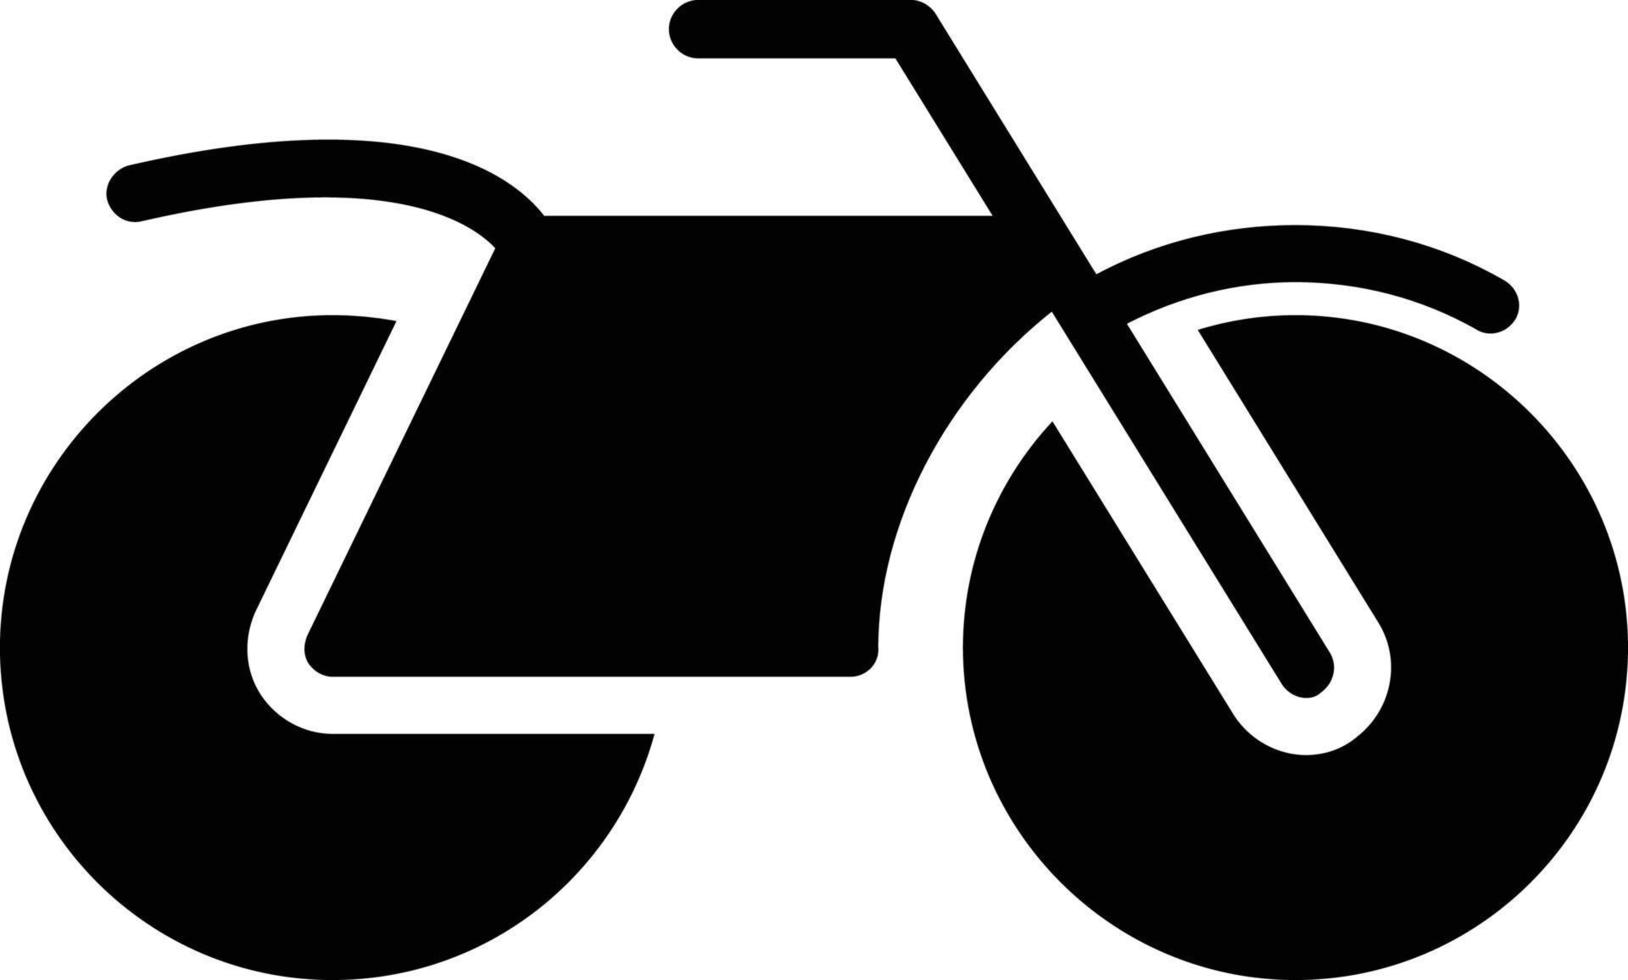 Motorcycle Vector Icon Design